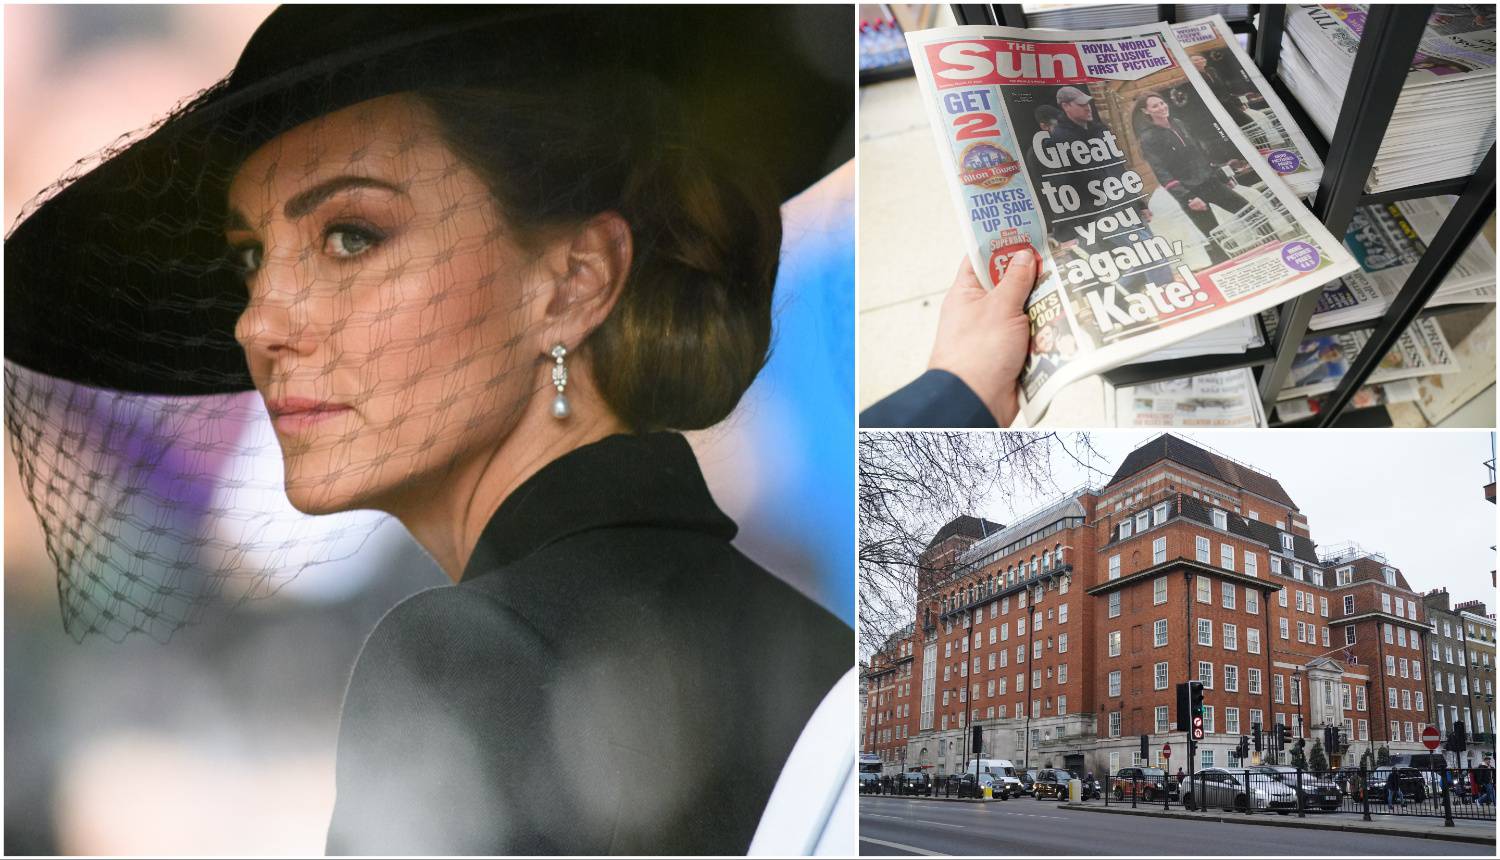 Hrvatski stručnjak za protokol o Kate Middleton: 'Javnost nije utišana jer je ona tako odlučila'